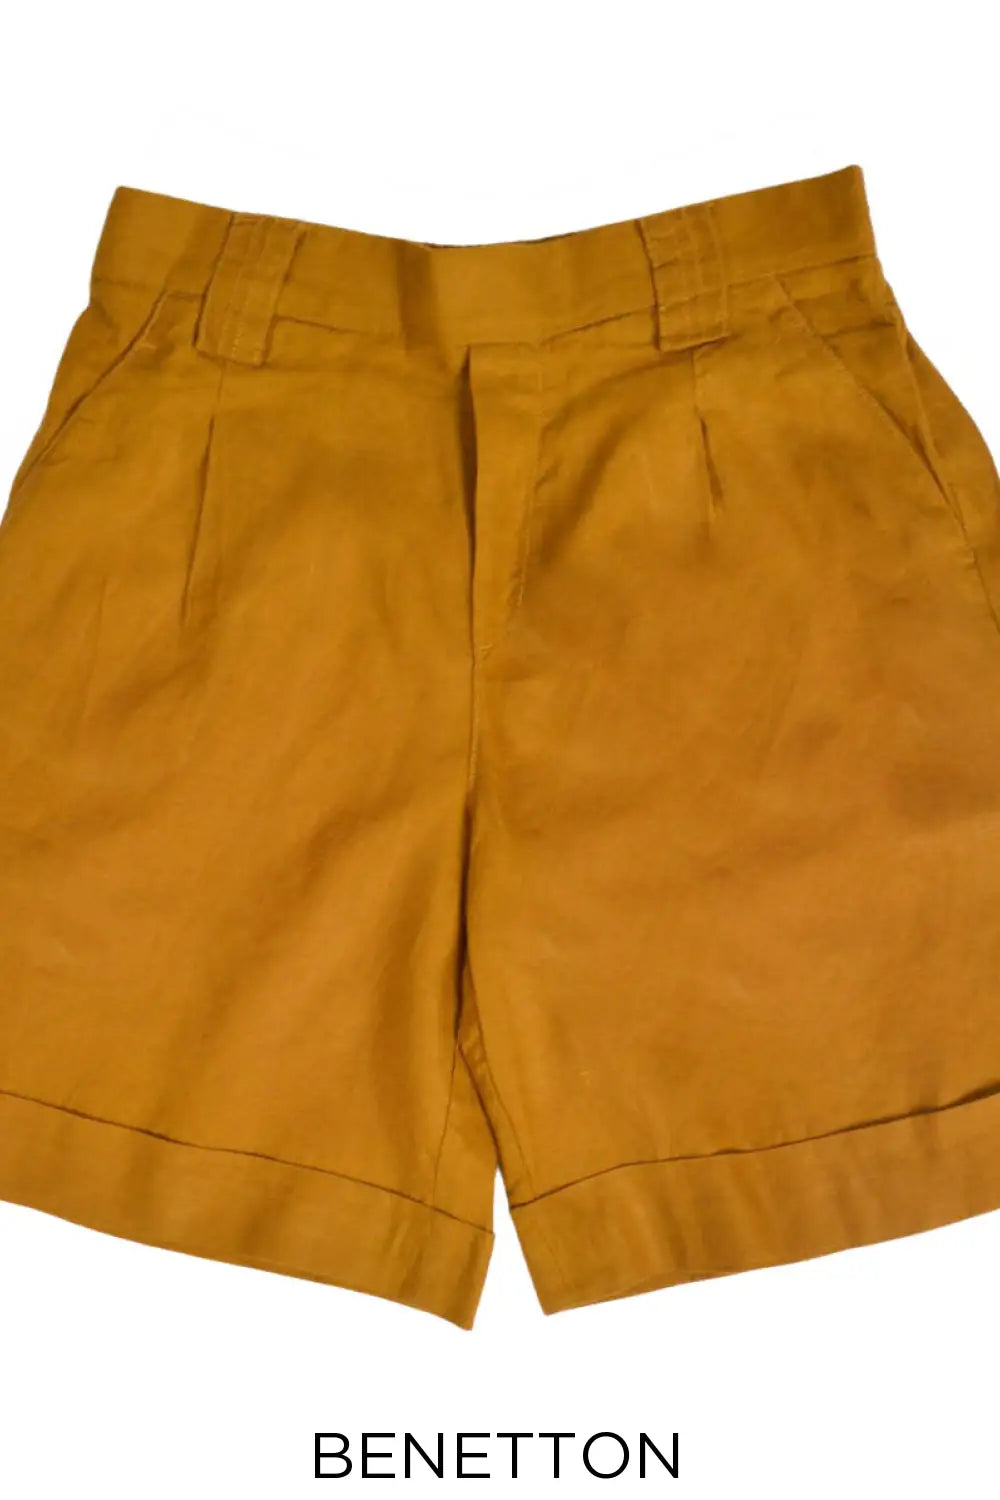 Benetton Wide Leg Linen Shorts Mustard / 8